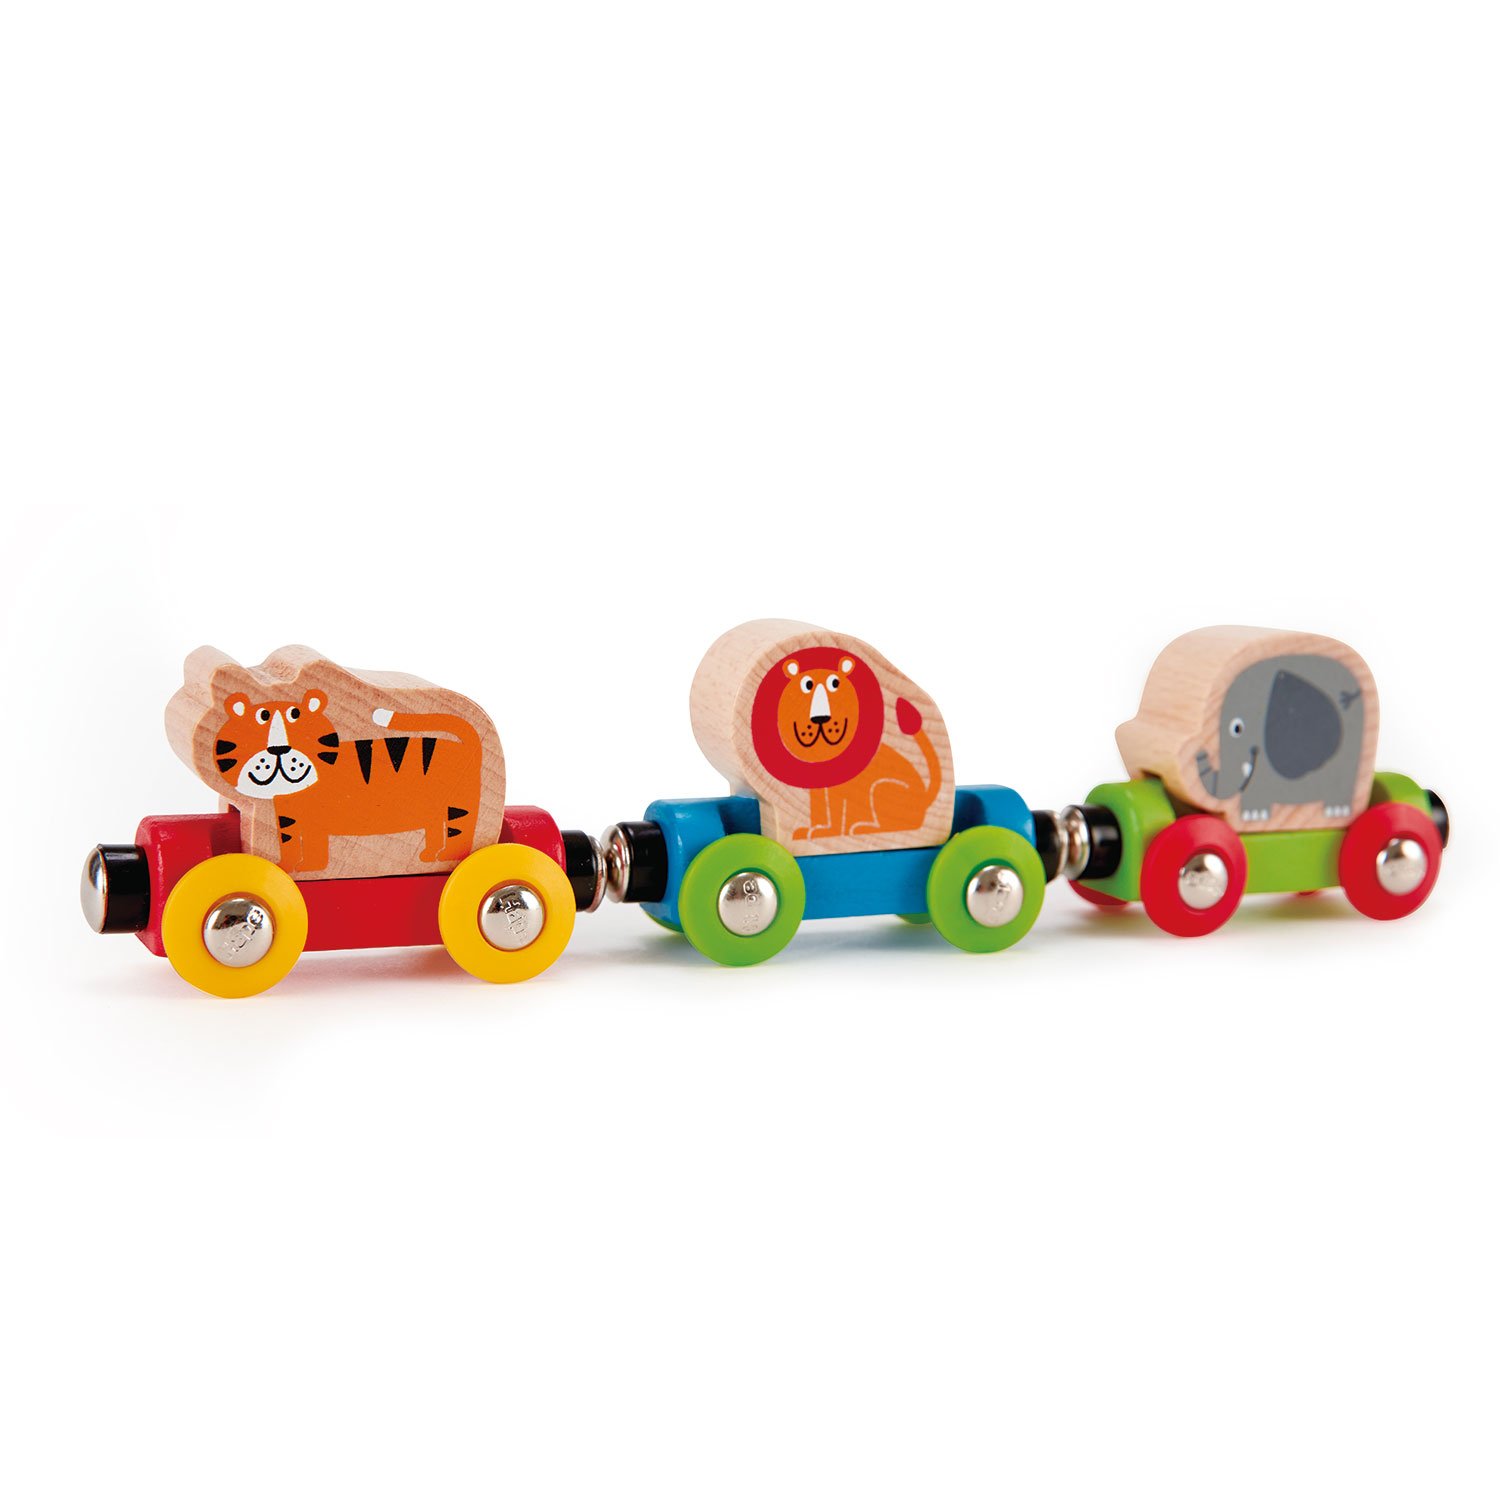 Hape Railway Toy